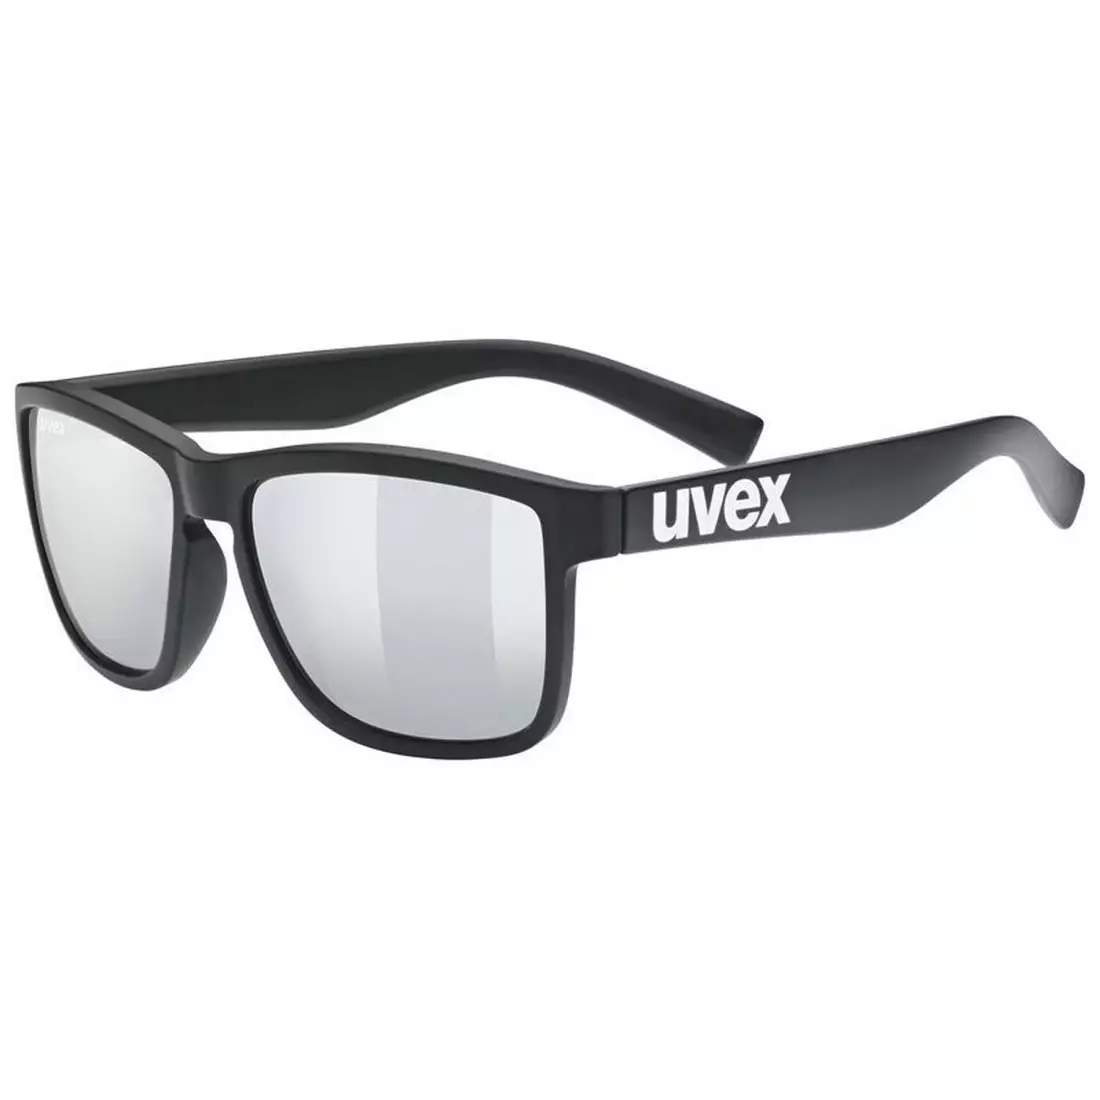 UVEX Sunglasses LGL 39 - black 53/2/012/2216/UNI